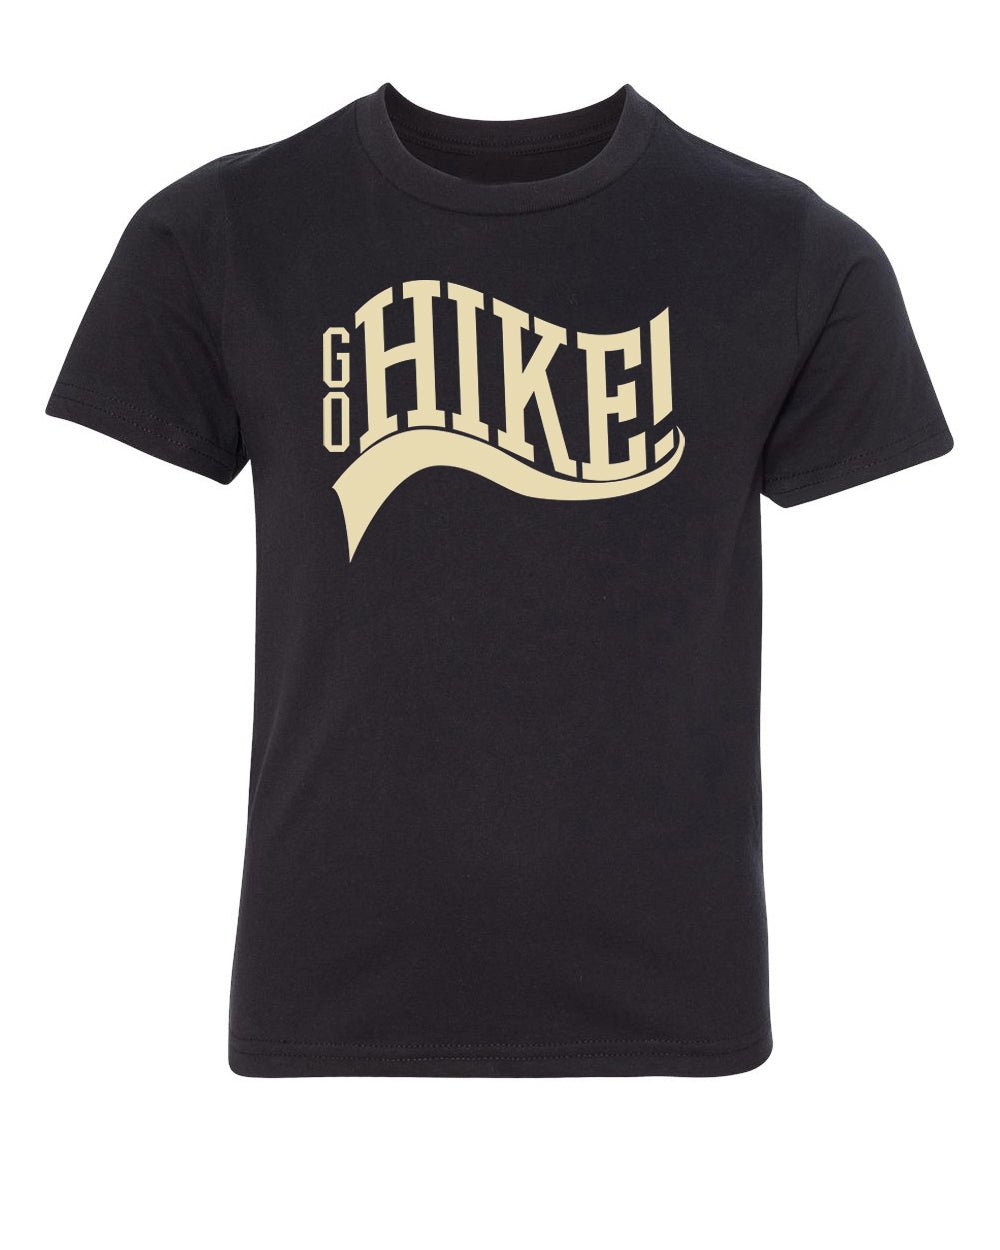 Go Hike! Kids T Shirts - Mato & Hash